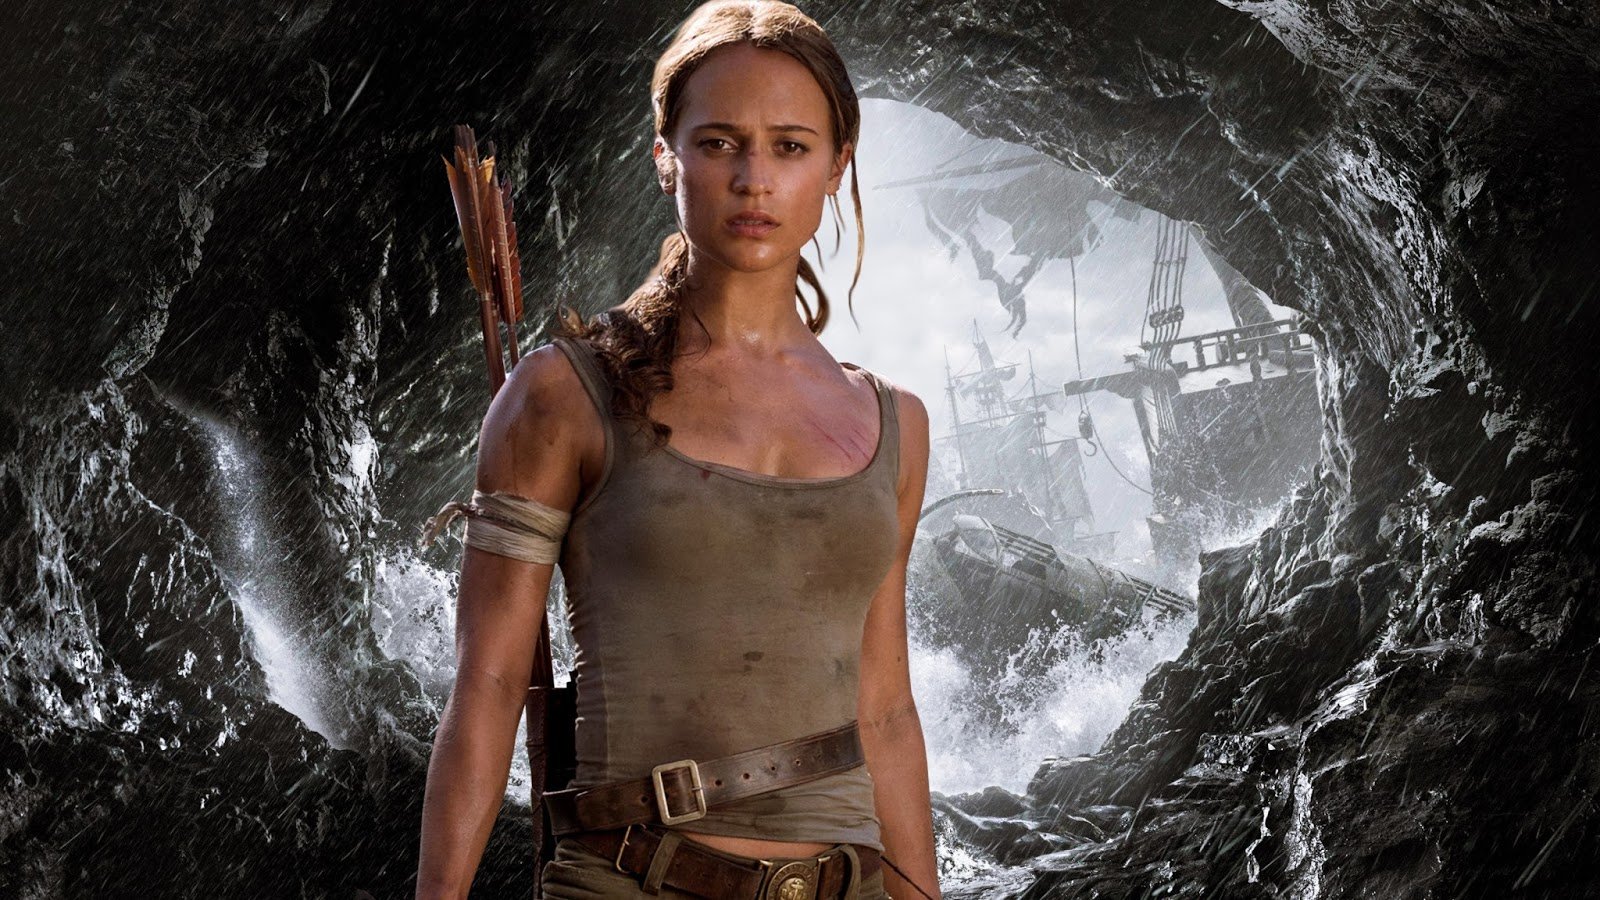 Filme de Tomb Raider ganha seu segundo trailer com muita ação